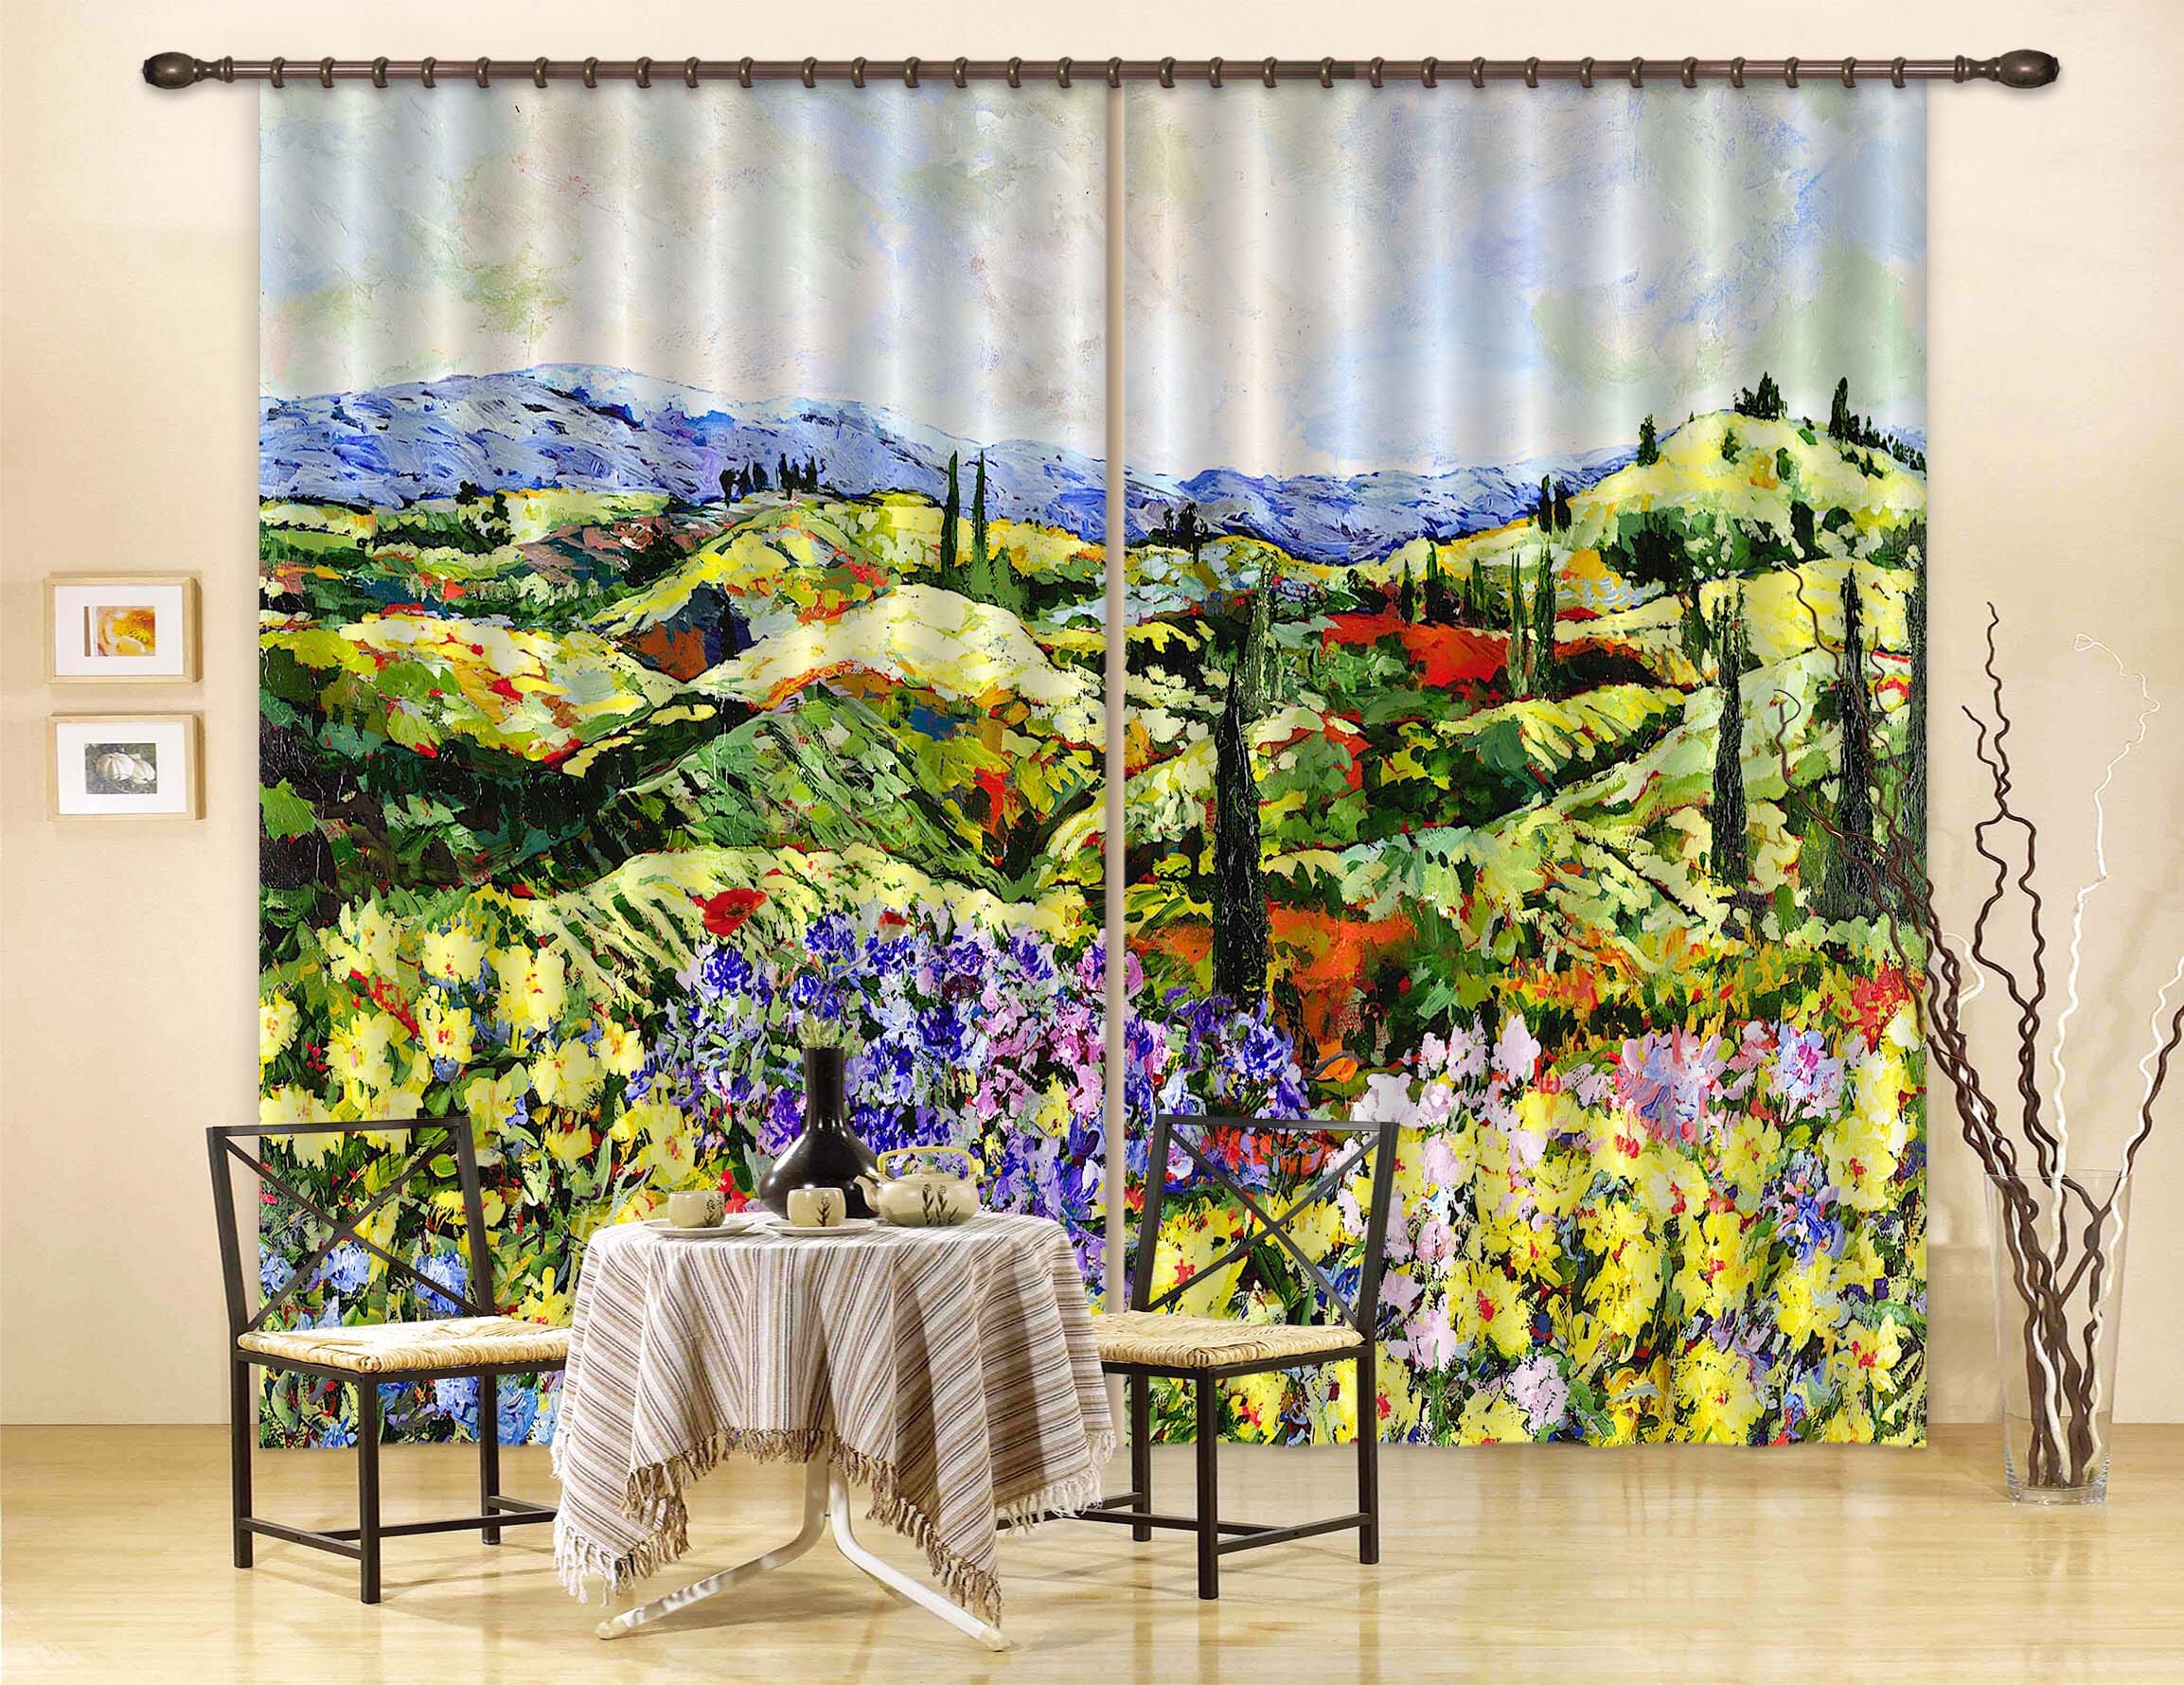 3D Dream Valley 041 Allan P. Friedlander Curtain Curtains Drapes Curtains AJ Creativity Home 